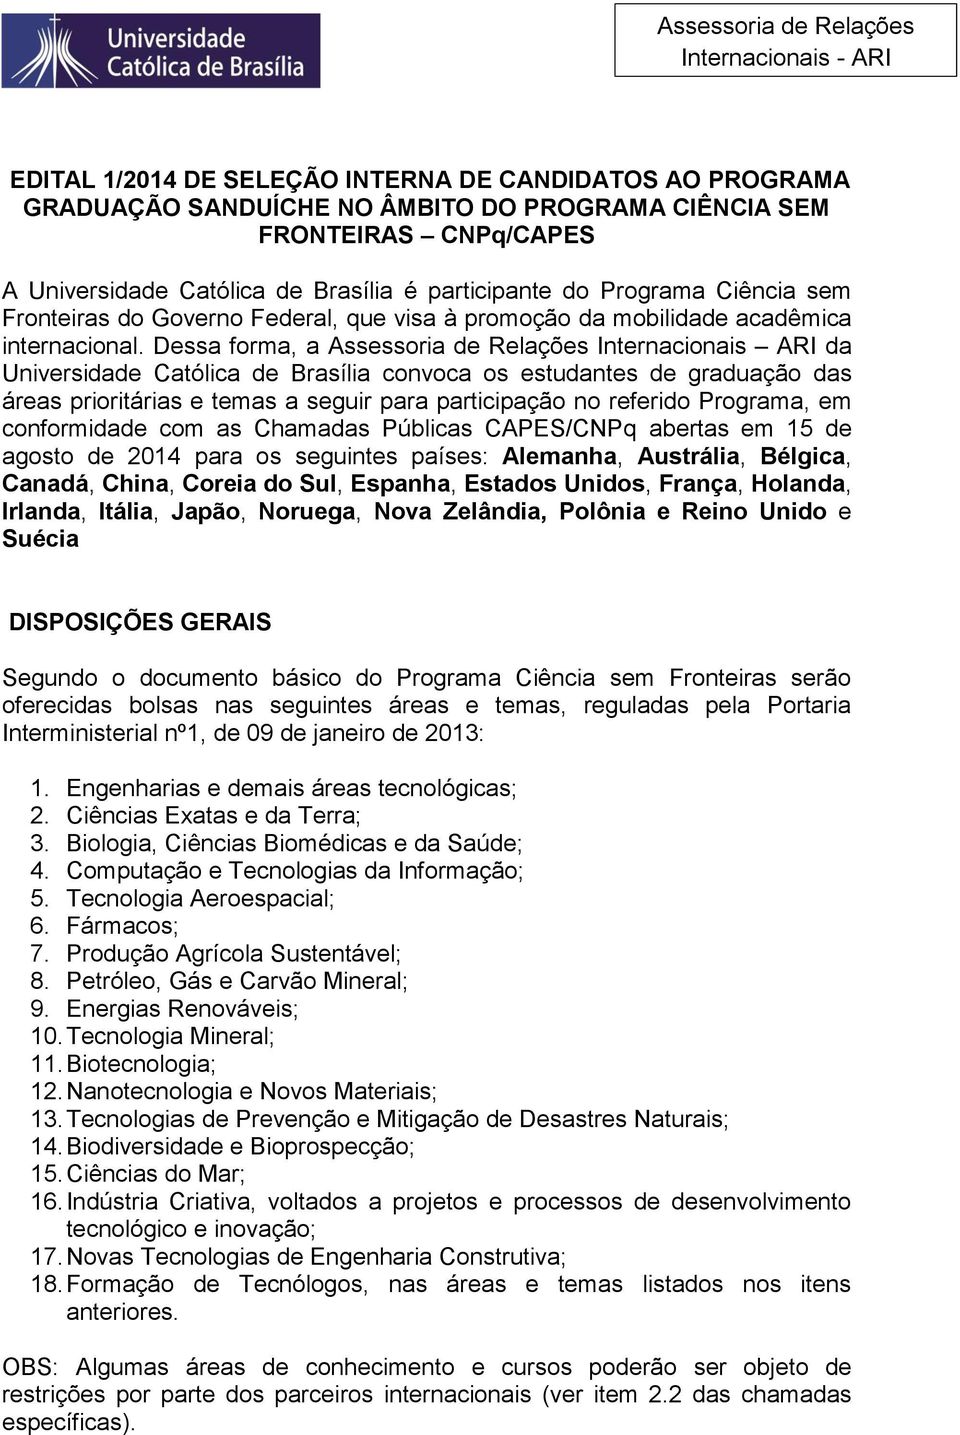 Dessa forma, a Assessoria de Relações Internacionais ARI da Universidade Católica de Brasília convoca os estudantes de graduação das áreas prioritárias e temas a seguir para participação no referido